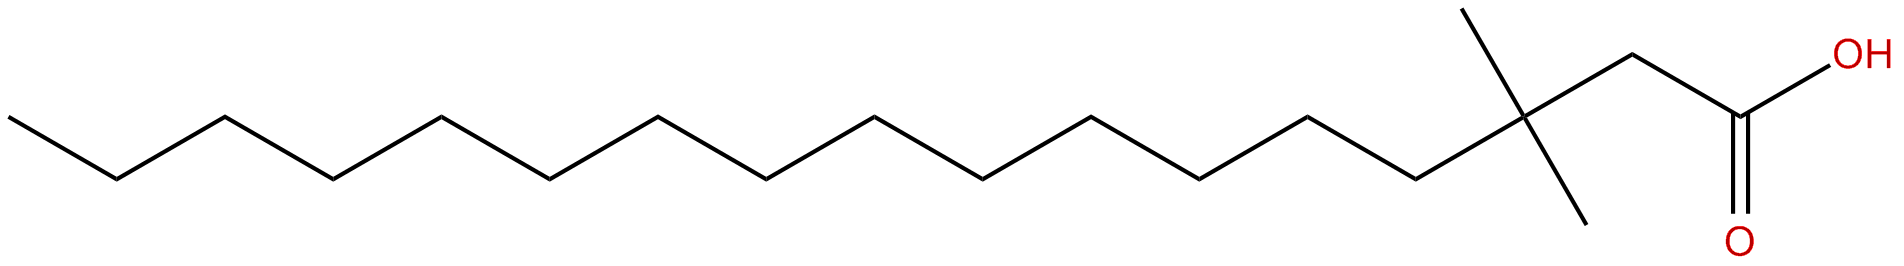 Image of 3,3-dimethylheptadecanoic acid